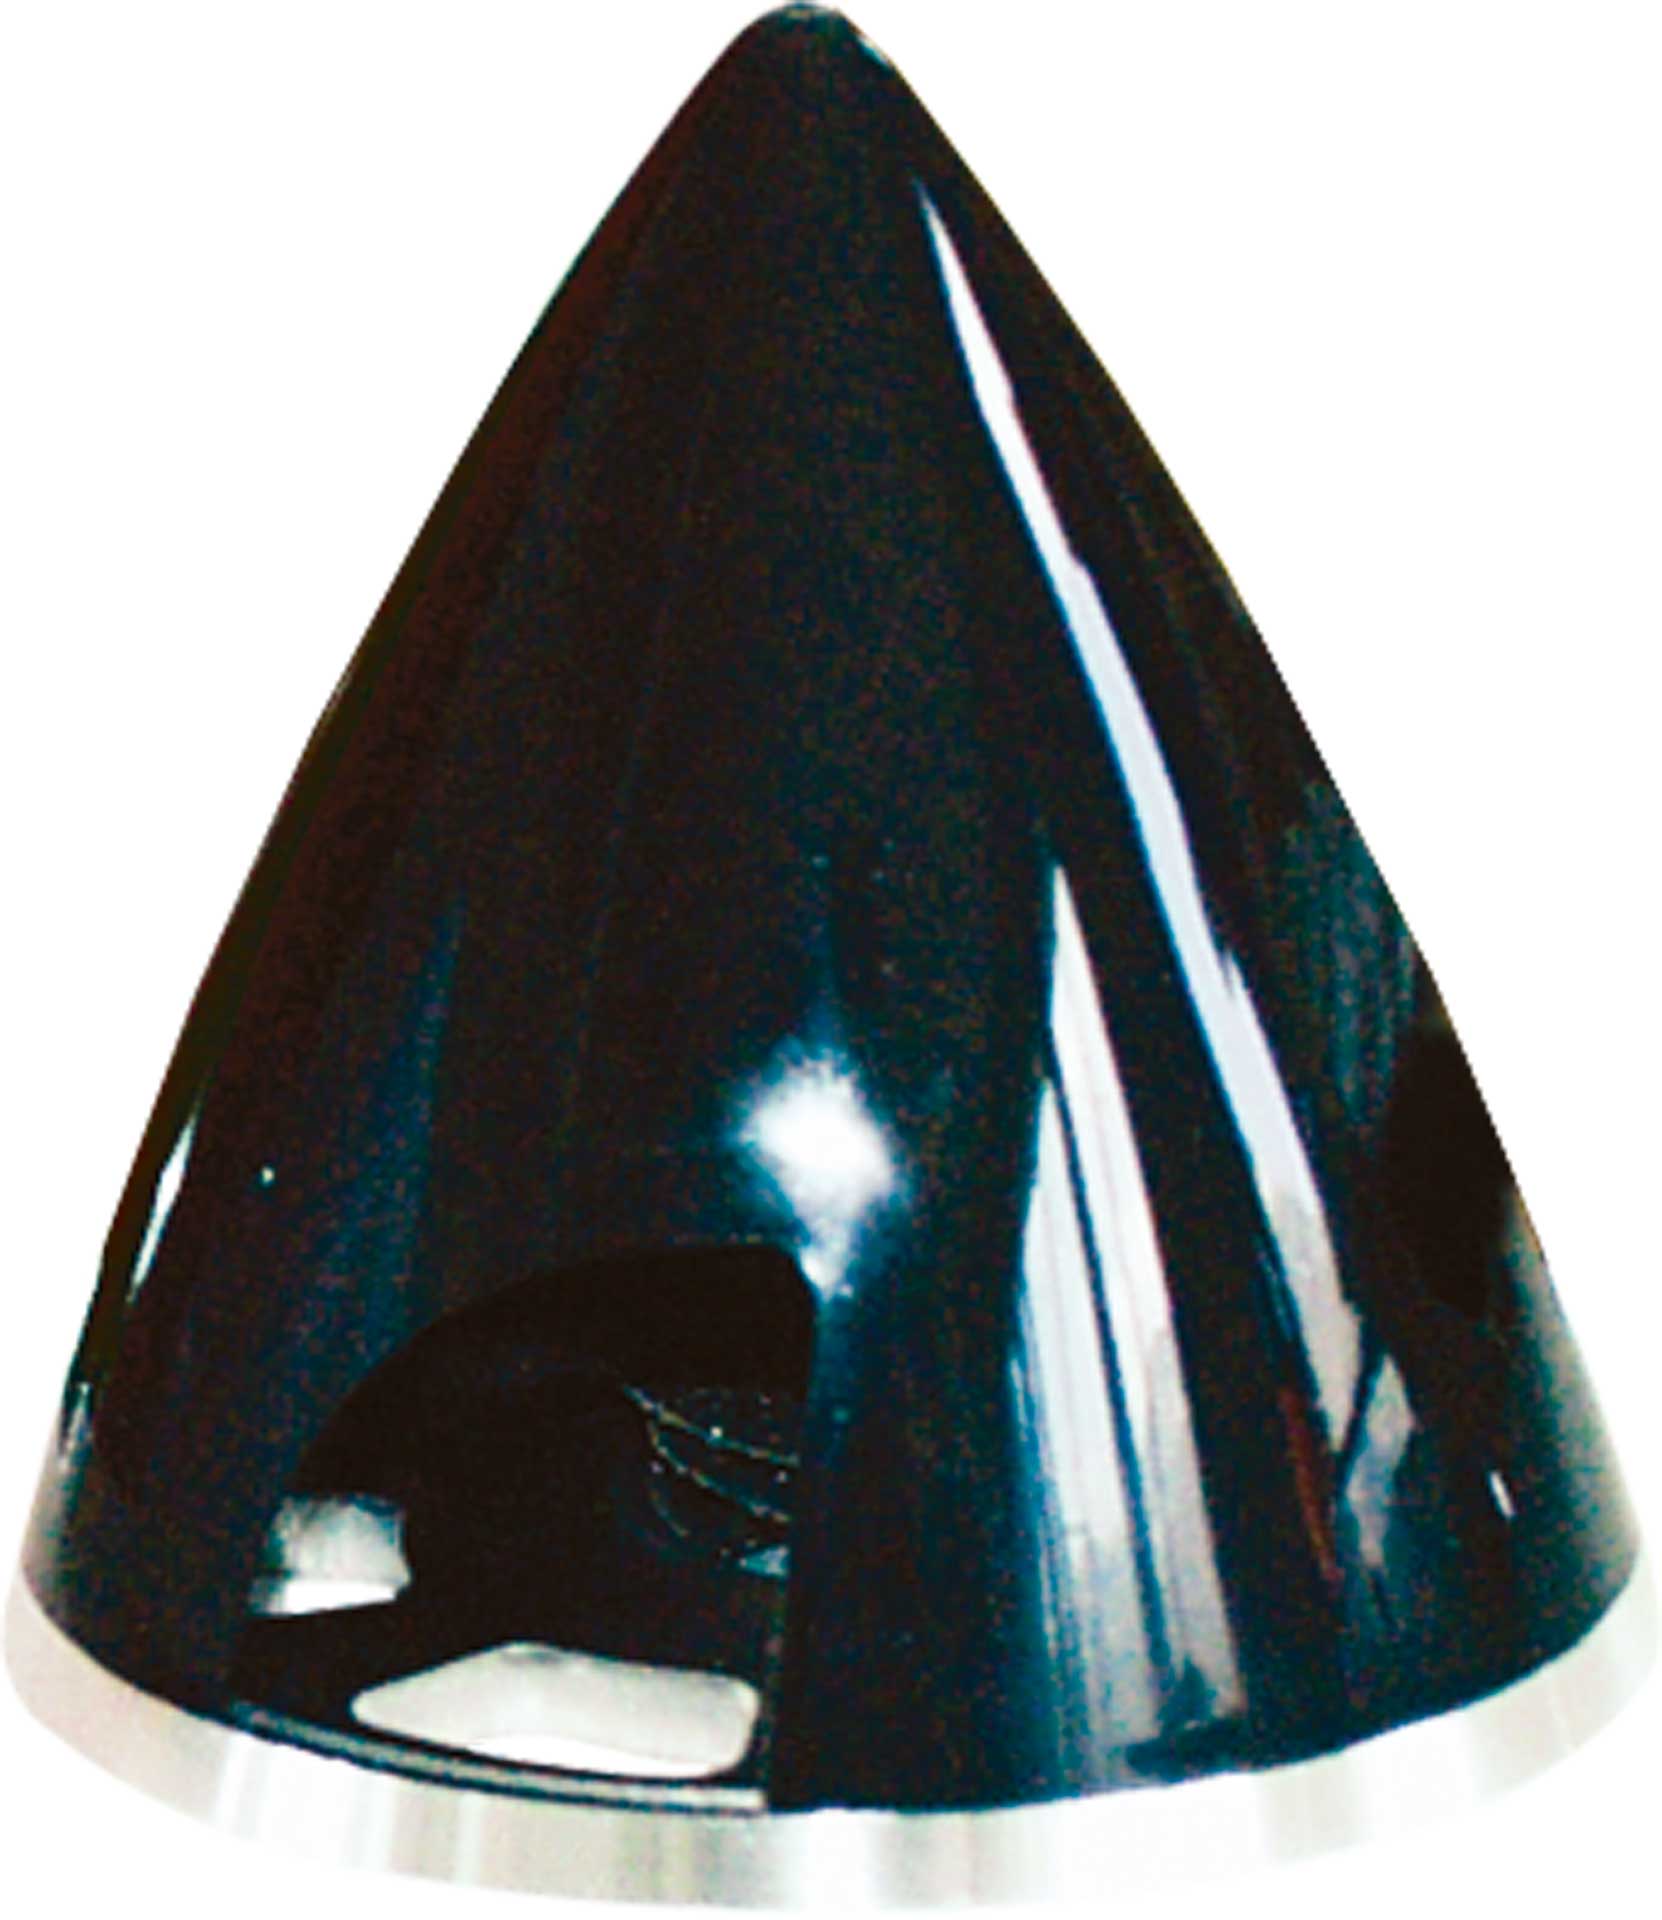 ARK Spinner Profi 51MM black plastic with aluminum base plate